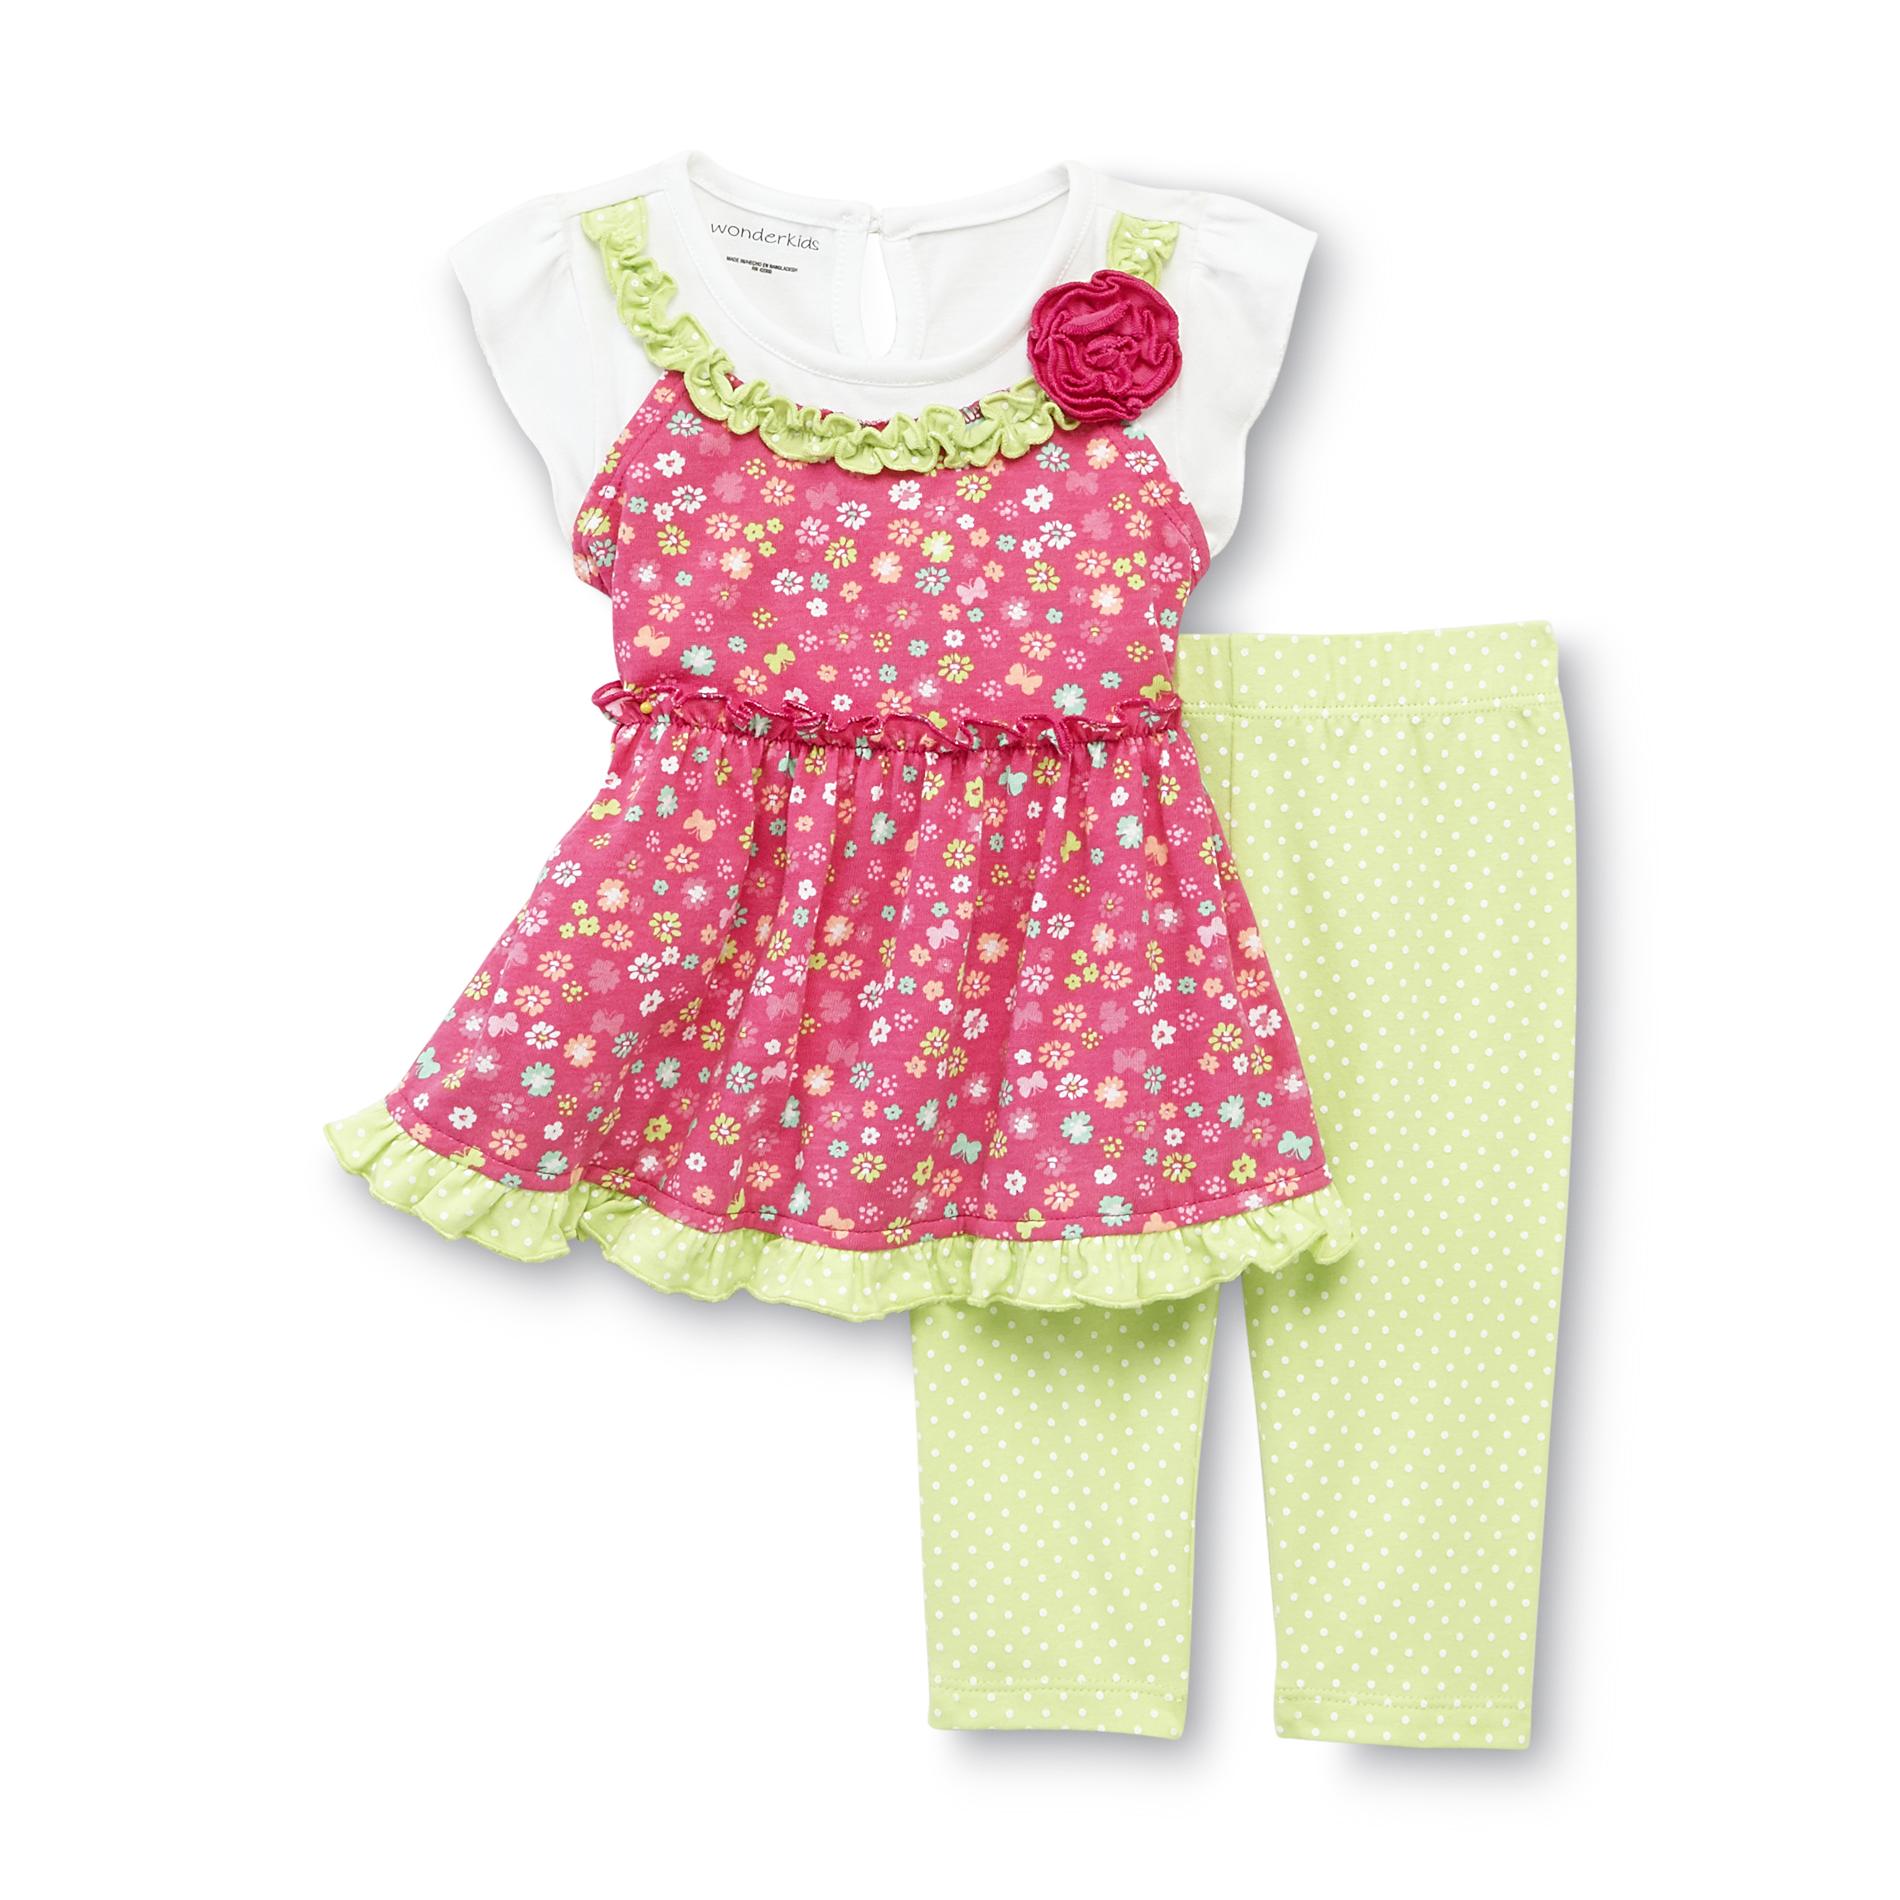 WonderKids Infant Girl's Tunic & Leggings - Floral & Polka Dot